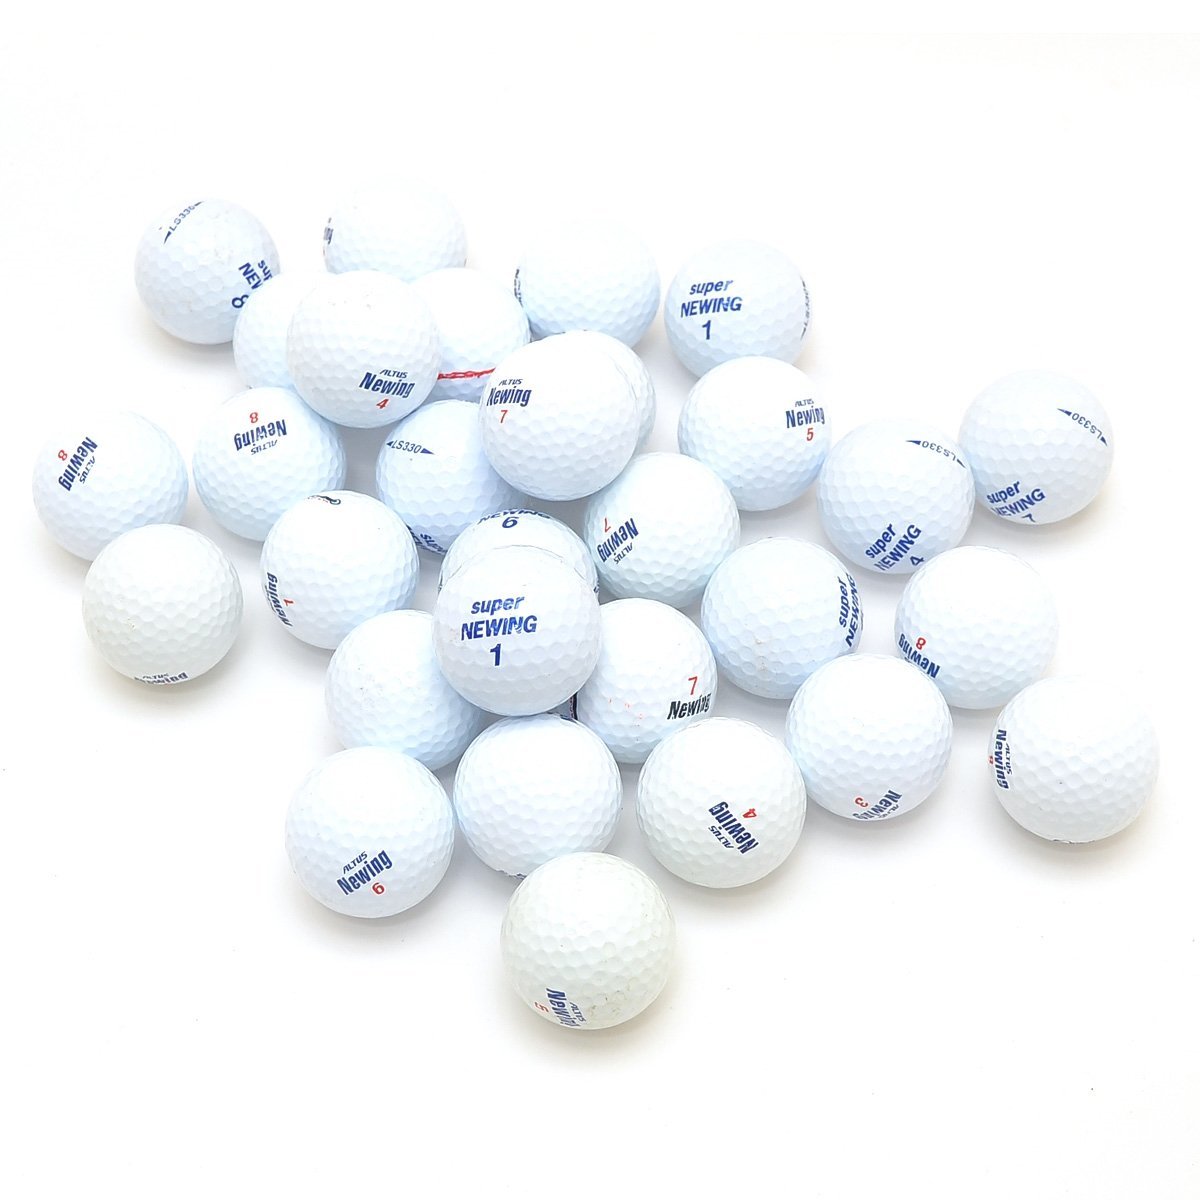 ロストボール Bridestone ブリジストン Newing ニューイング 30個 ゴルフボール 30個 売買されたオークション情報 Yahooの商品情報をアーカイブ公開 オークファン Aucfan Com